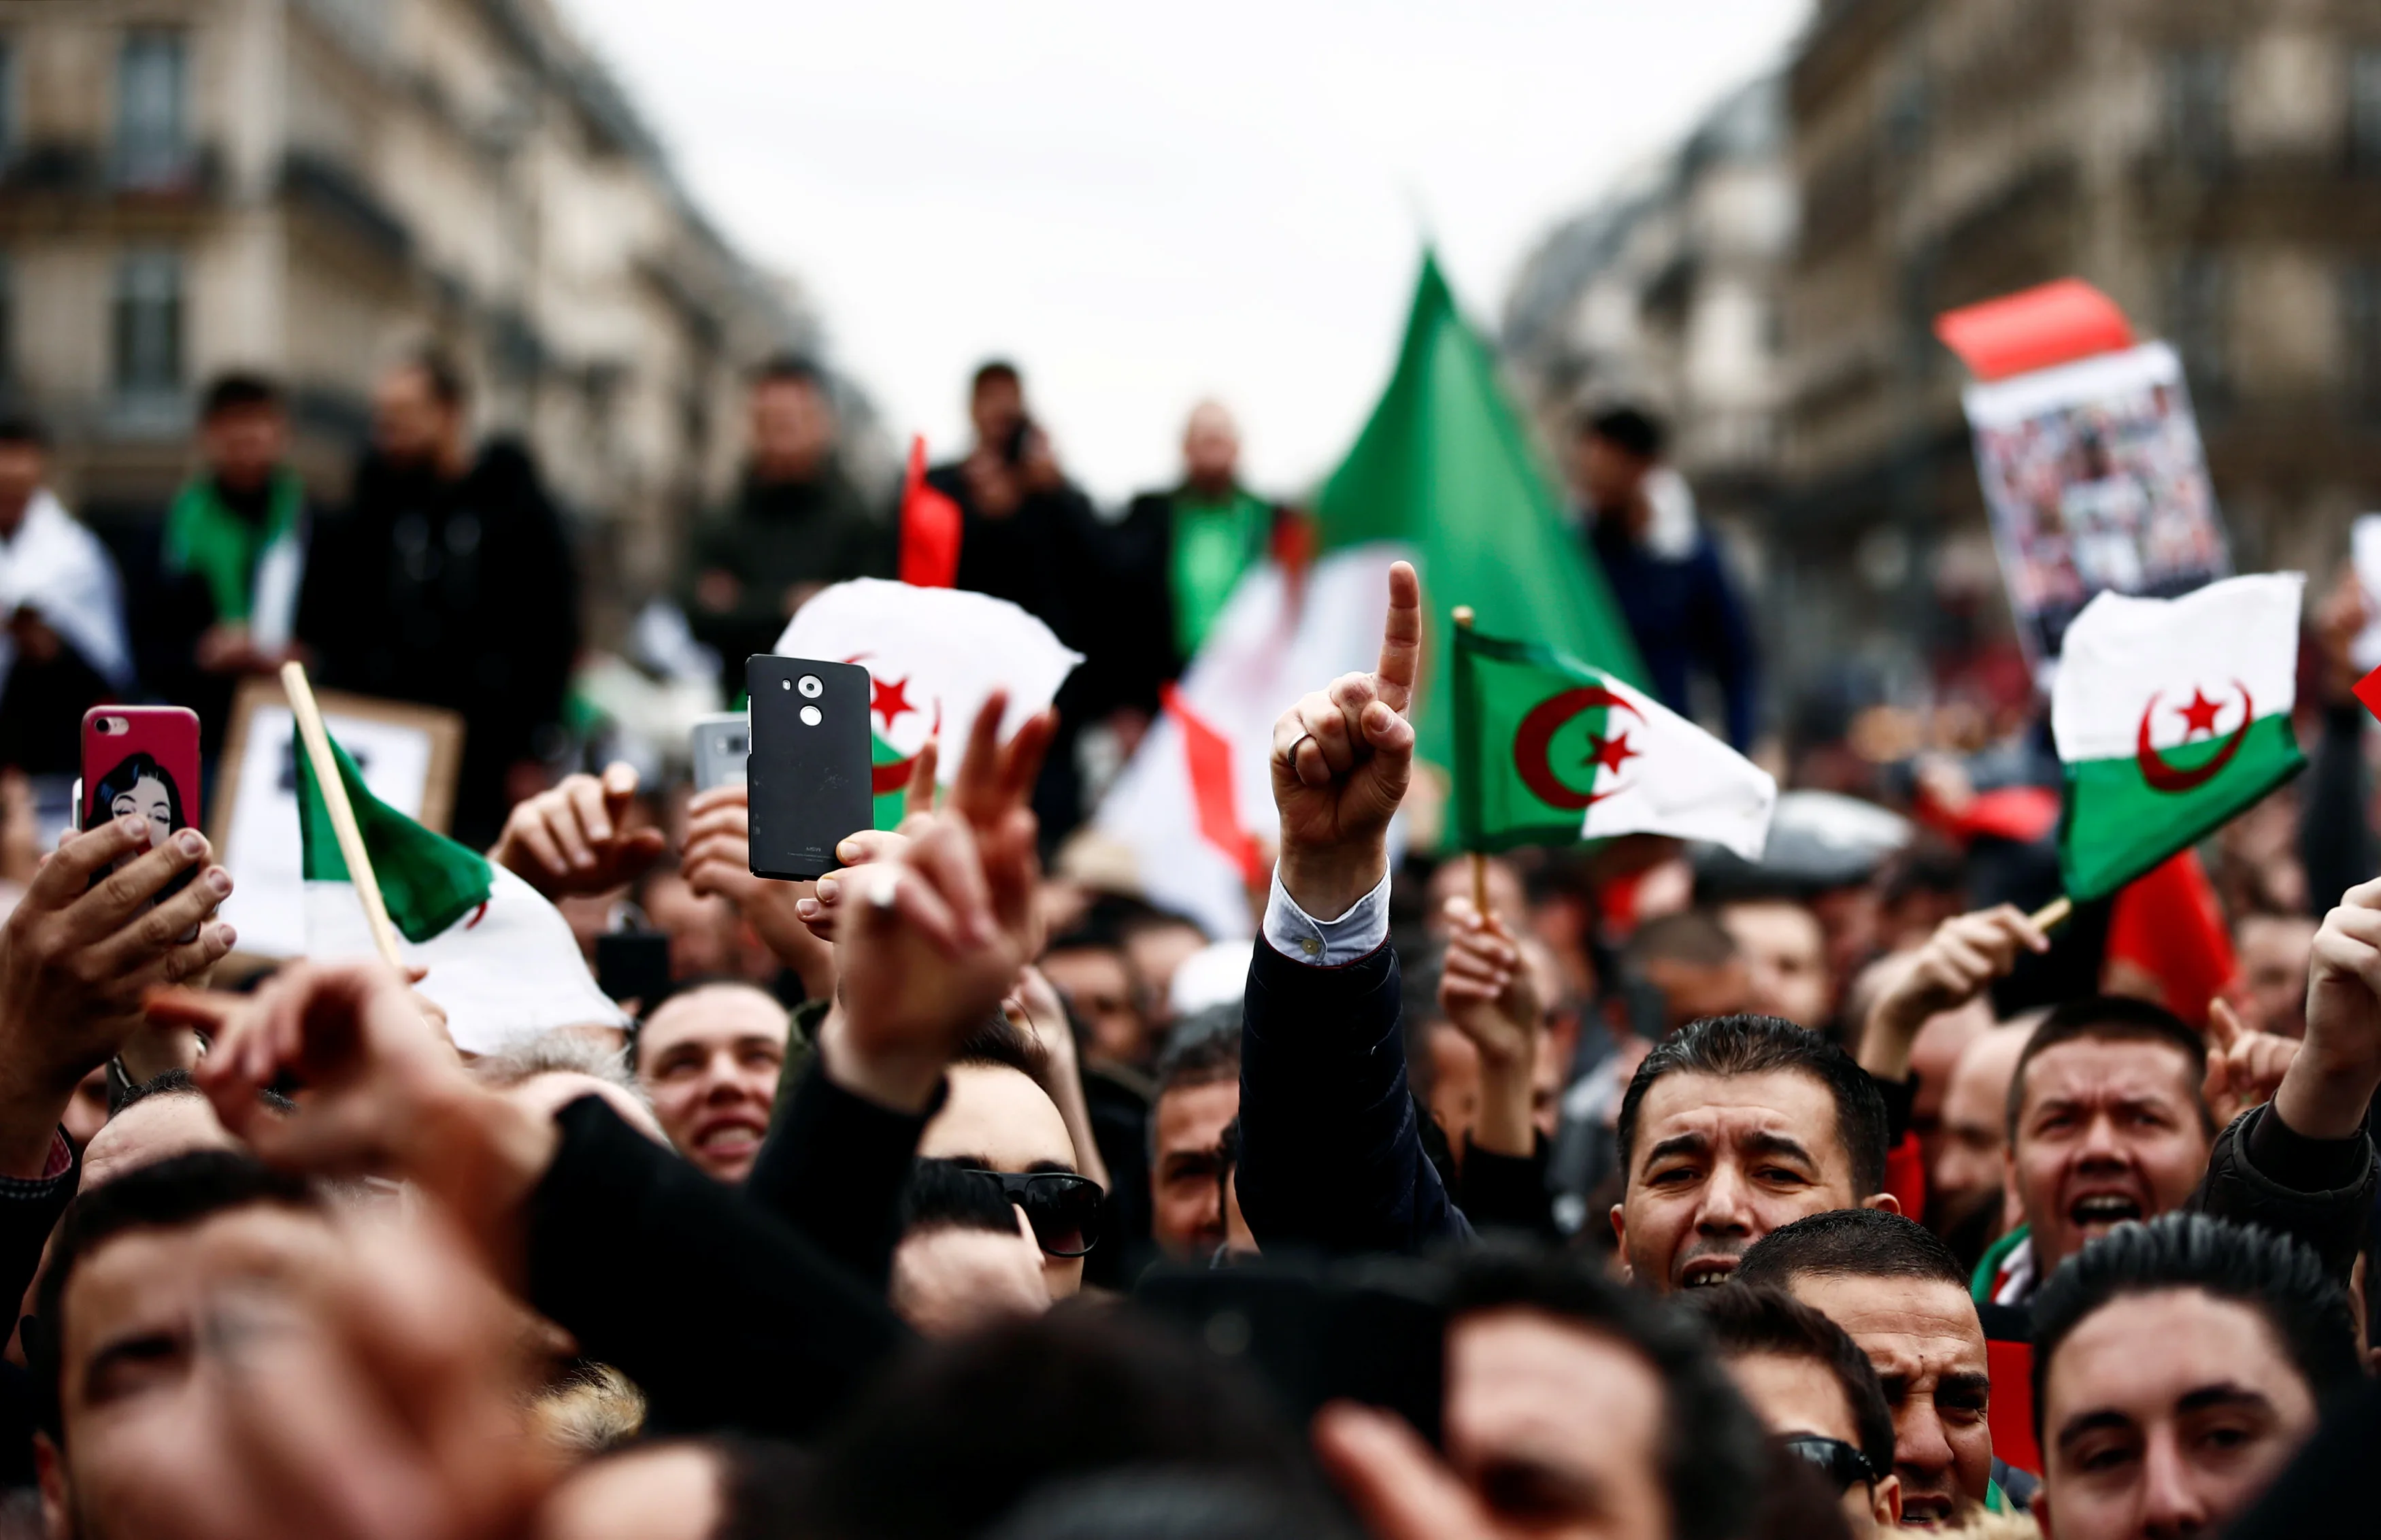 2019-03-03t161932z_1006324657_rc16c2b37cd0_rtrmadp_3_algeria-bouteflika-france-protest